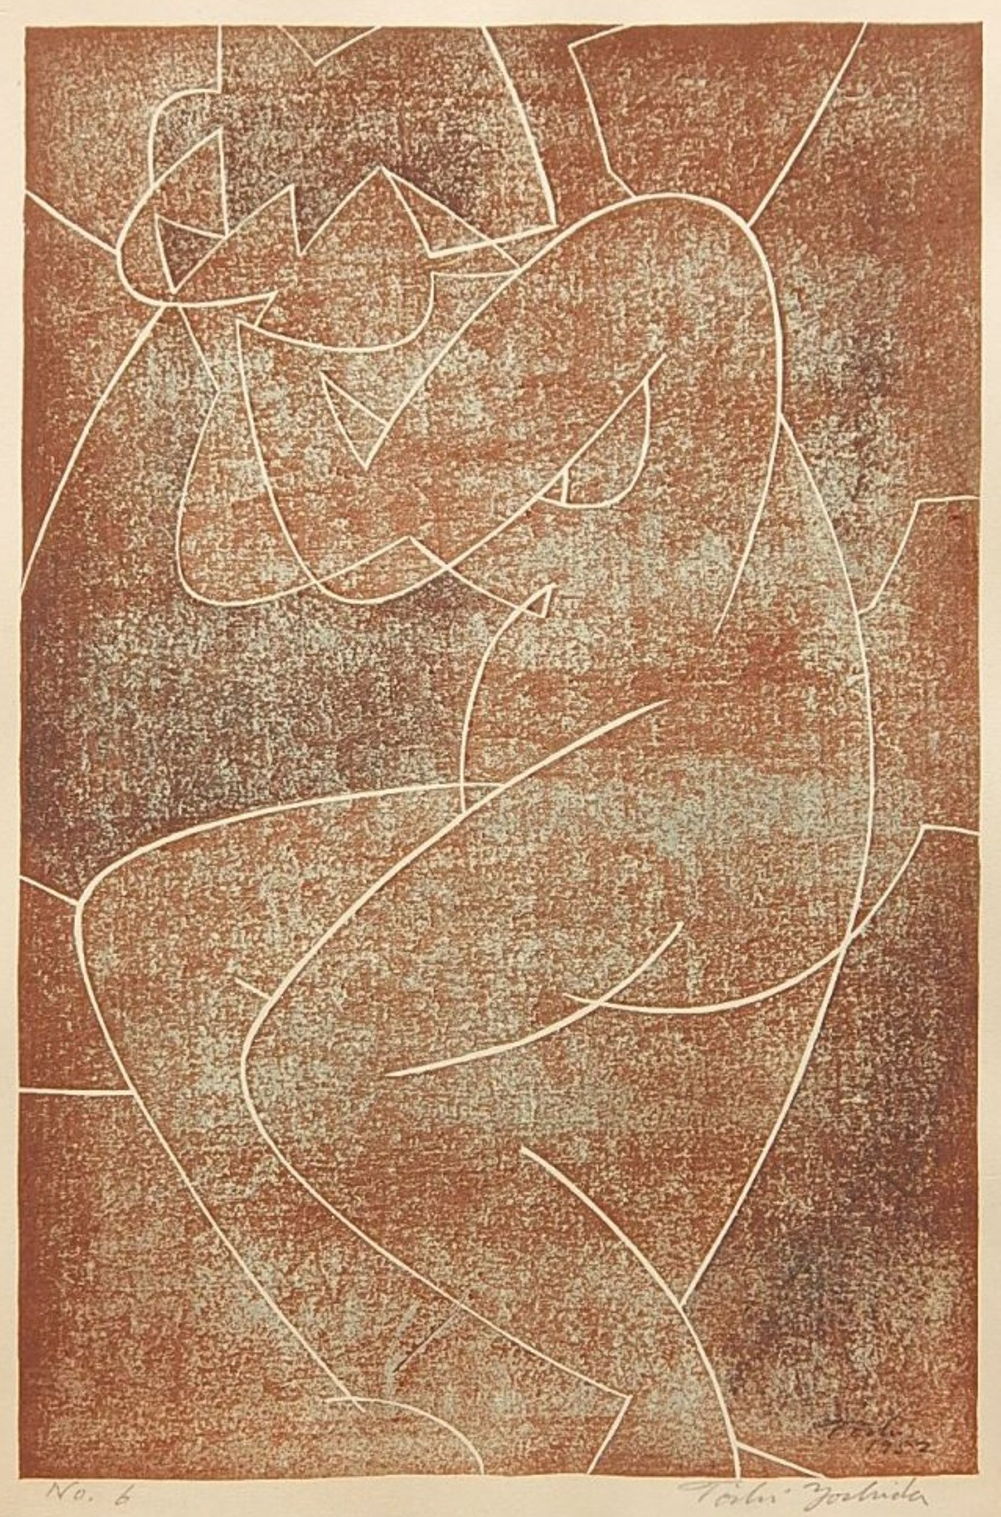 Toshi Yoshida “No. 6” 1952 woodblock print